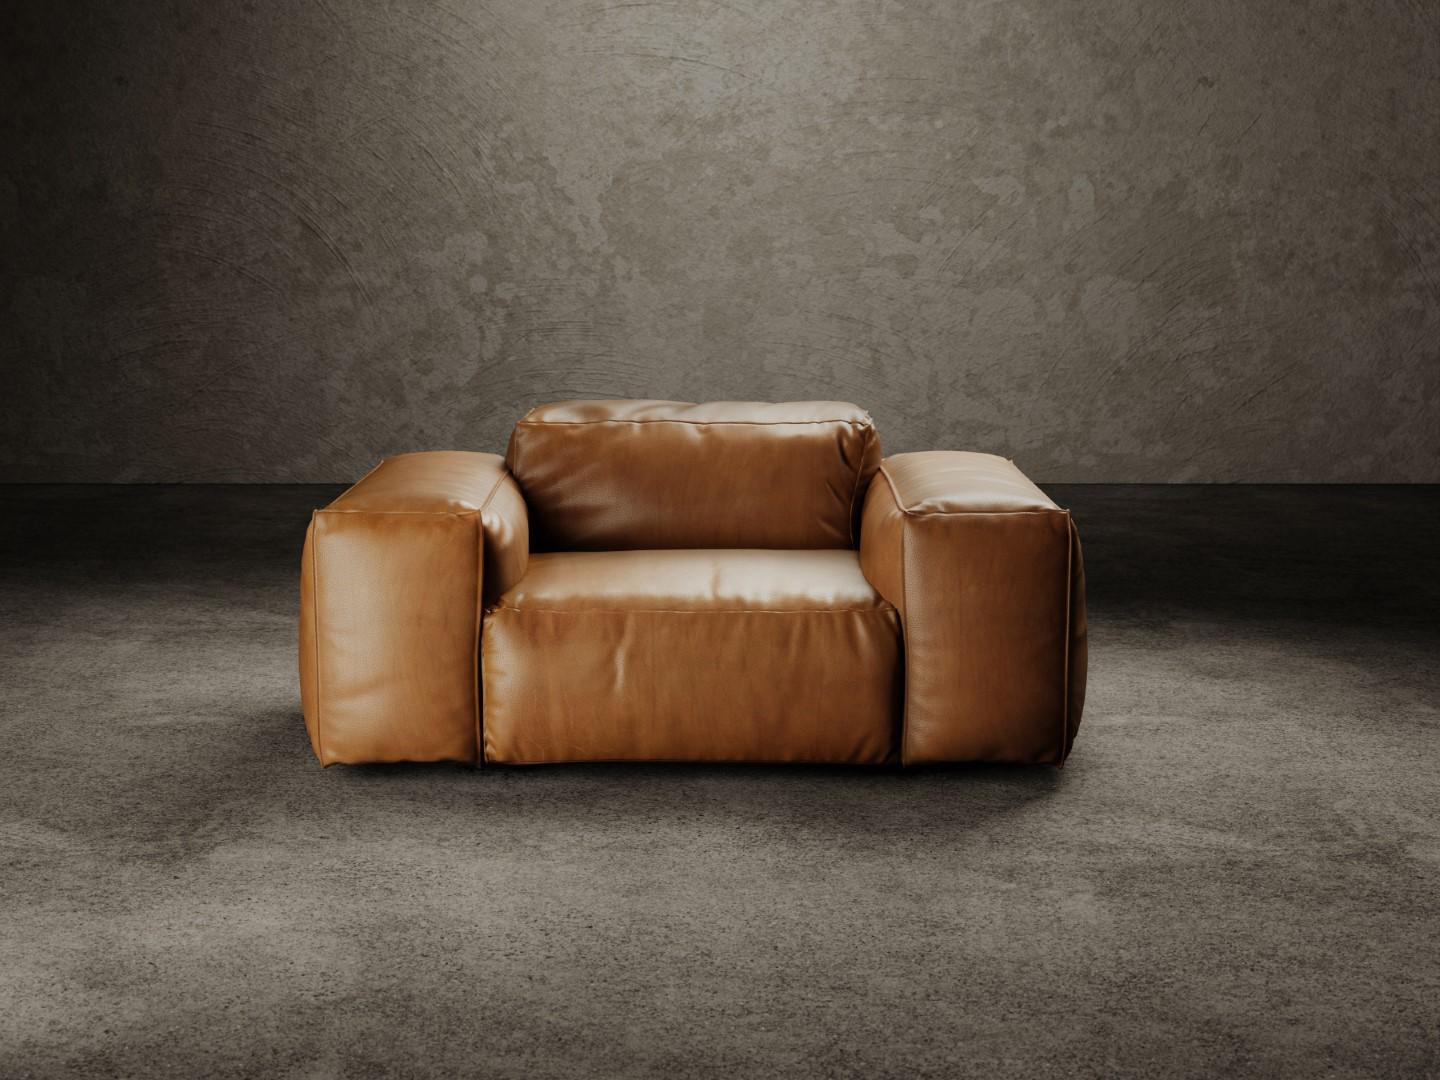 Der Sessel RENCONTRE MOI besteht aus einer Holzschale, die mit Polyurethanschaum unterschiedlicher Dichte gepolstert ist, und einer mit Gänsefedern gemischten Deckschicht. Der Sessel ist komplett mit Stoff oder Leder bezogen. Die Formen von